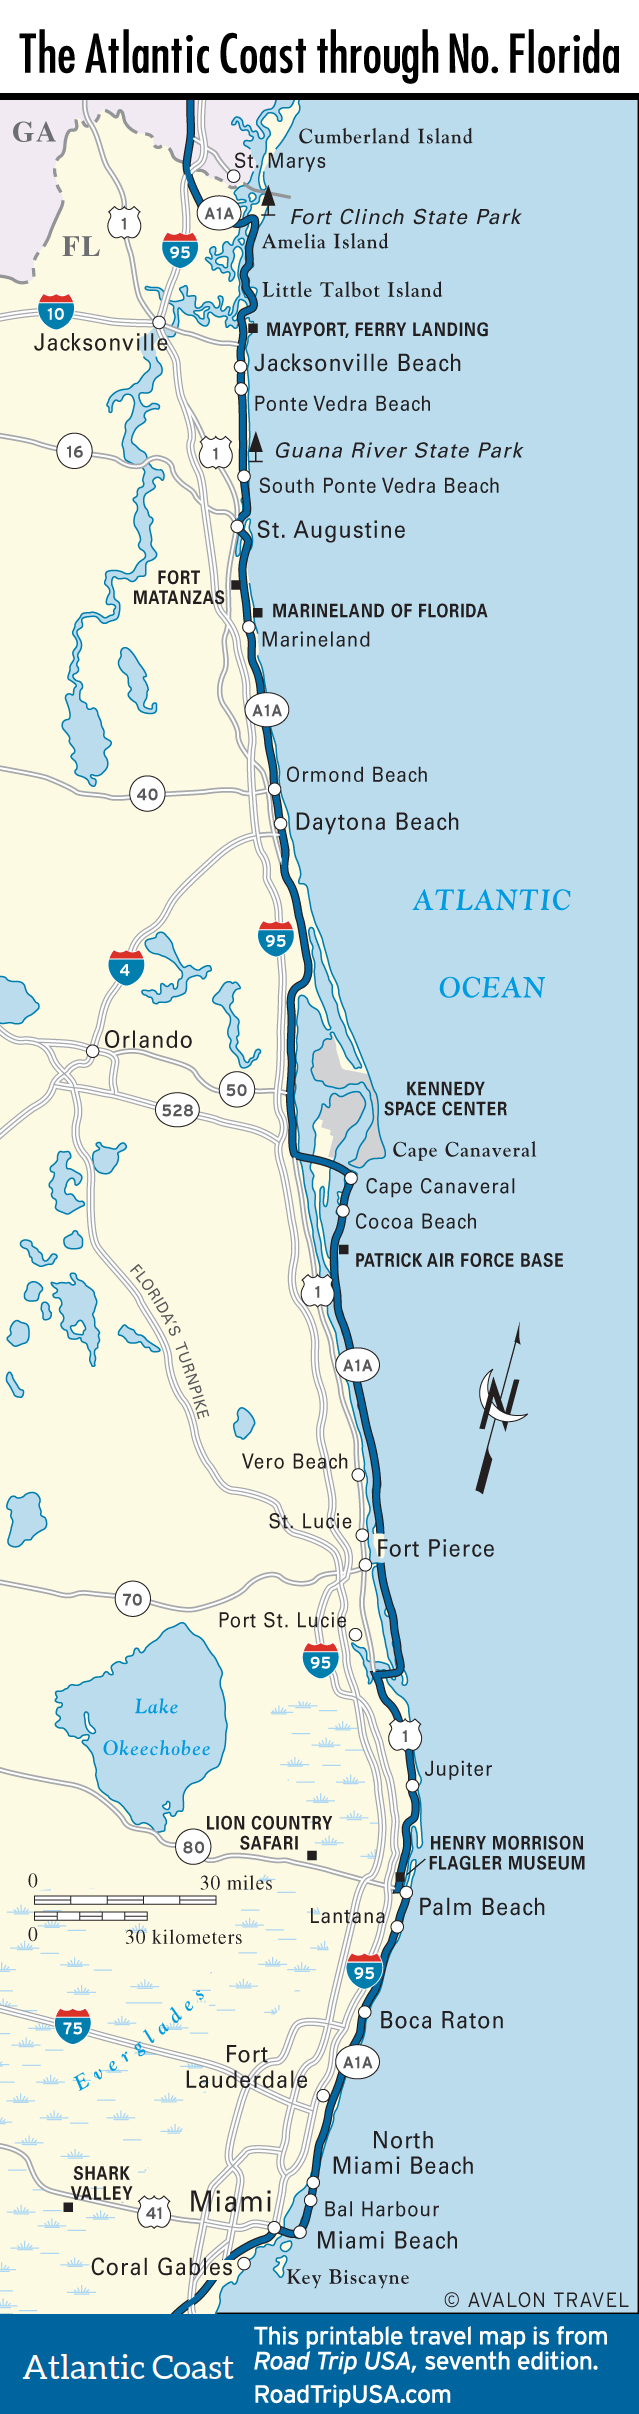 Atlantic Coast Florida Road Trip ROAD TRIP USA